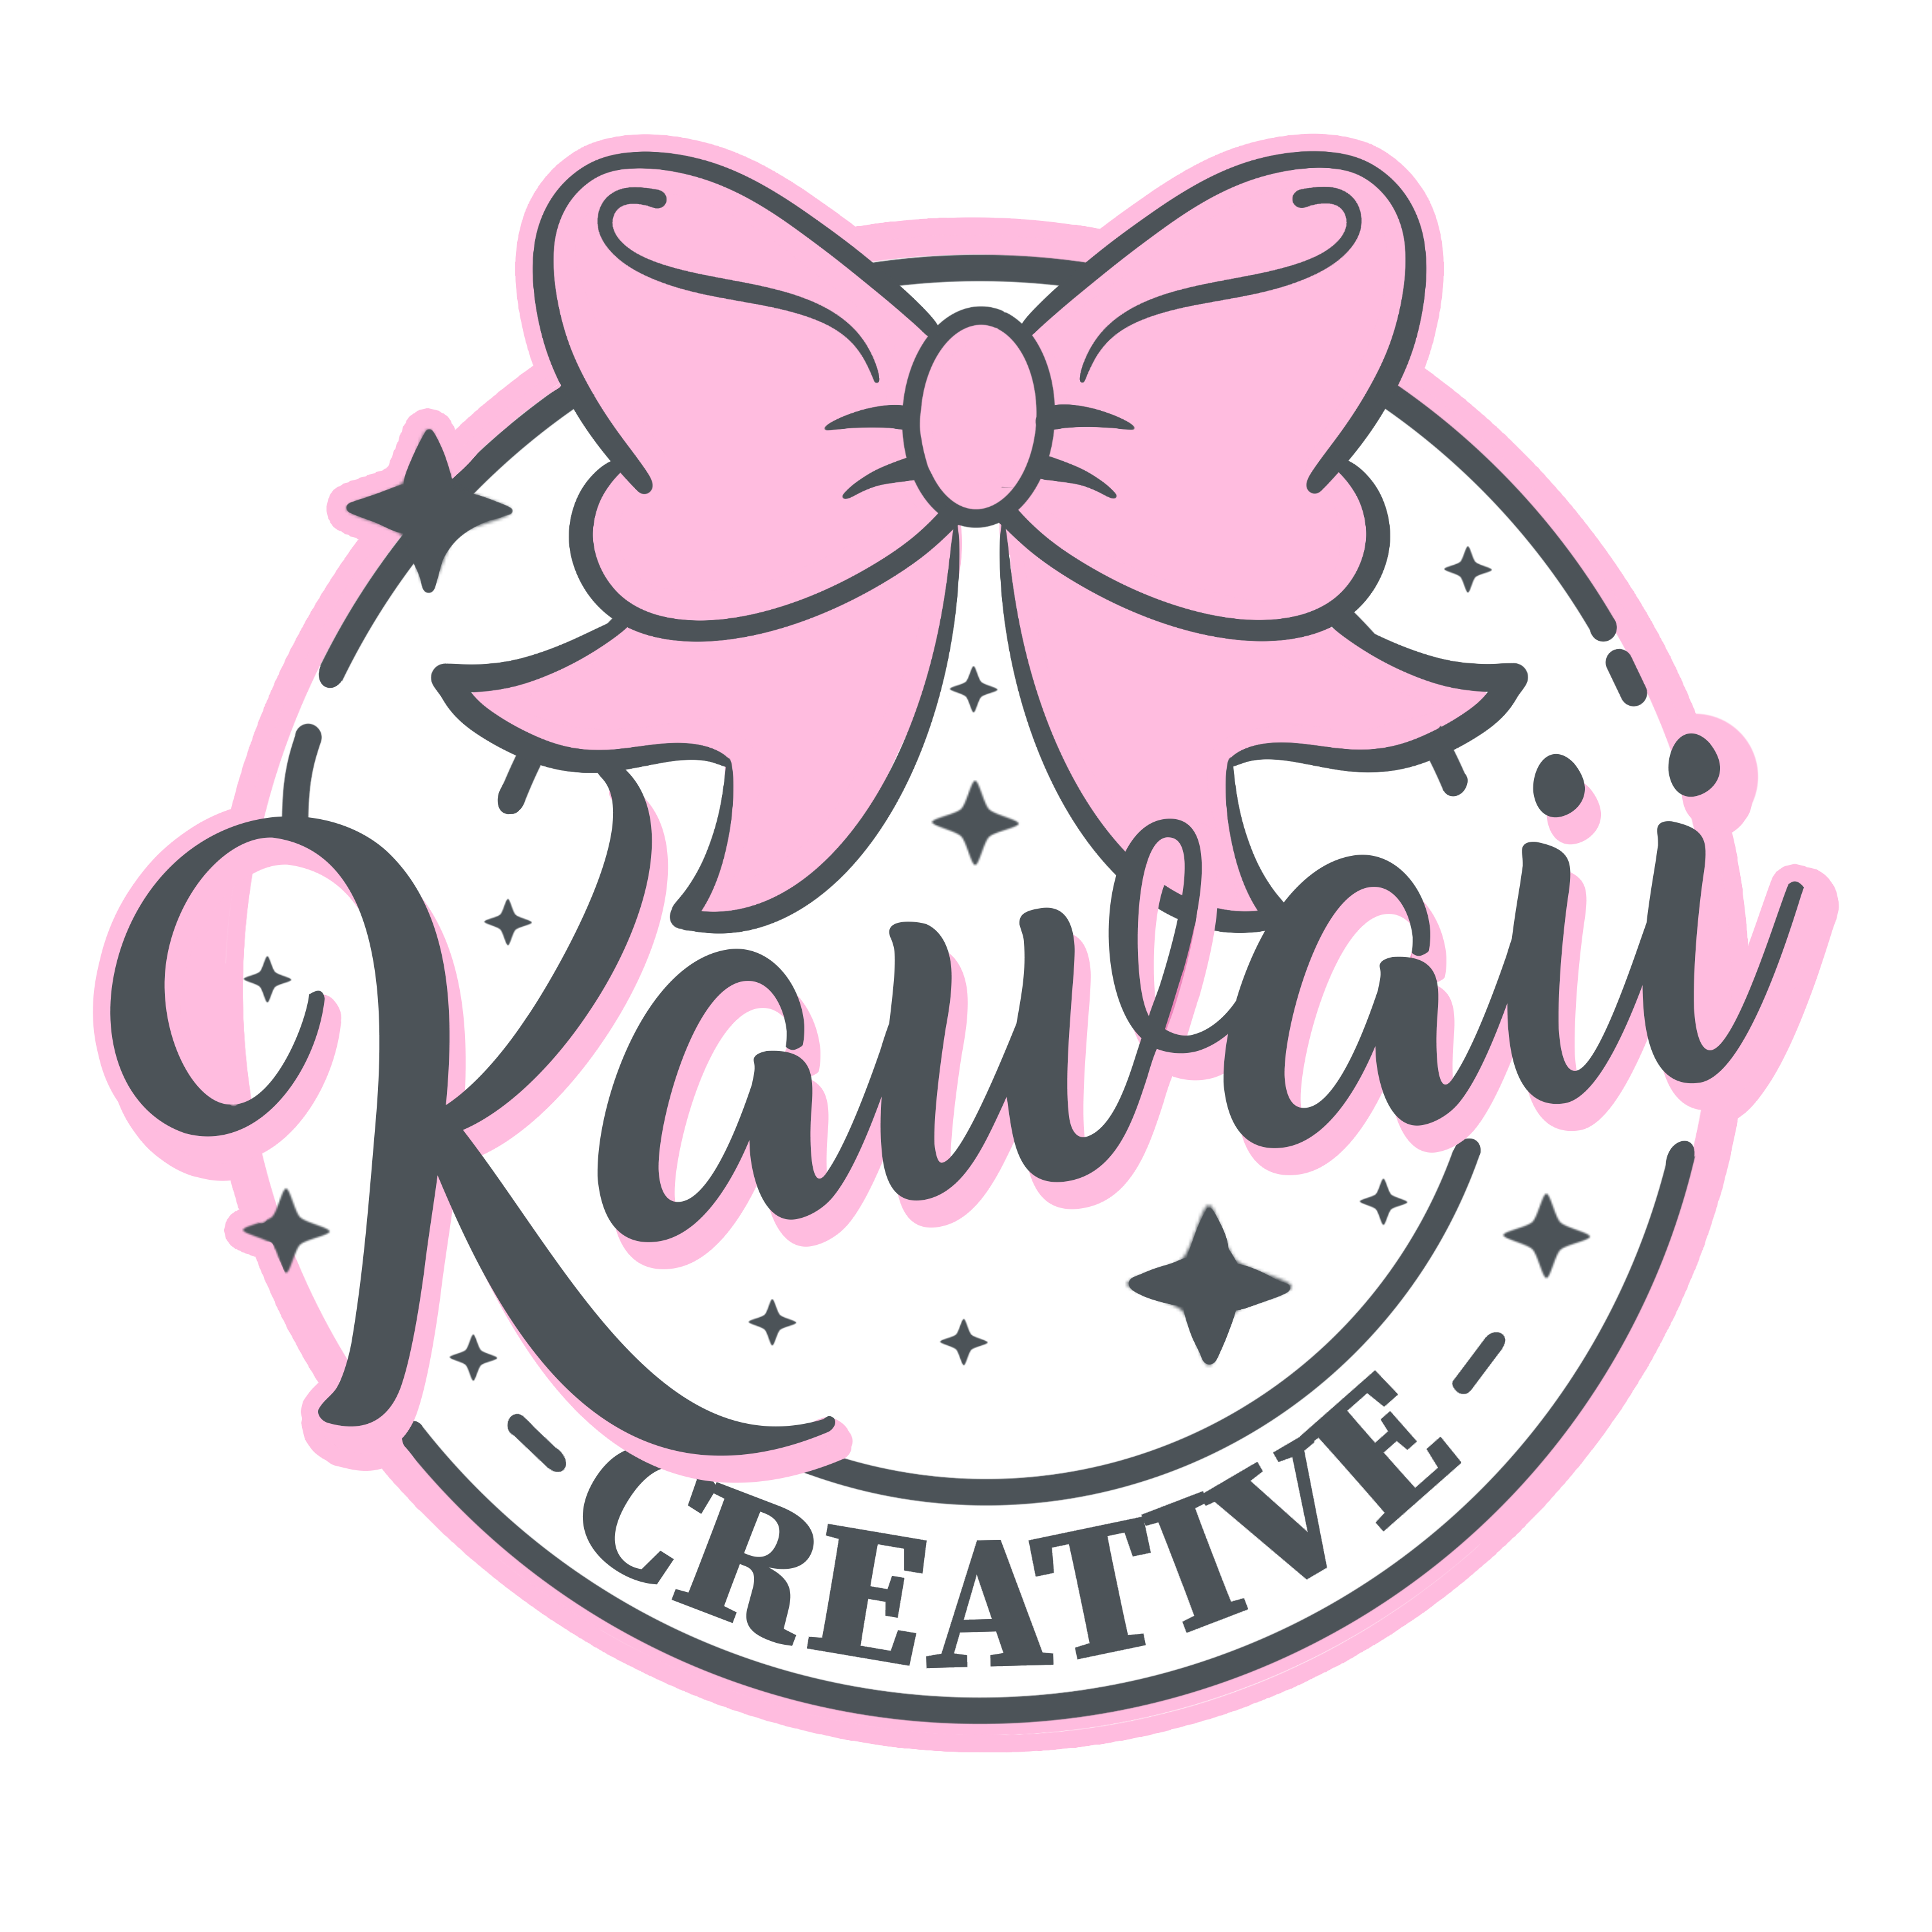 Kawaii Creative Logo